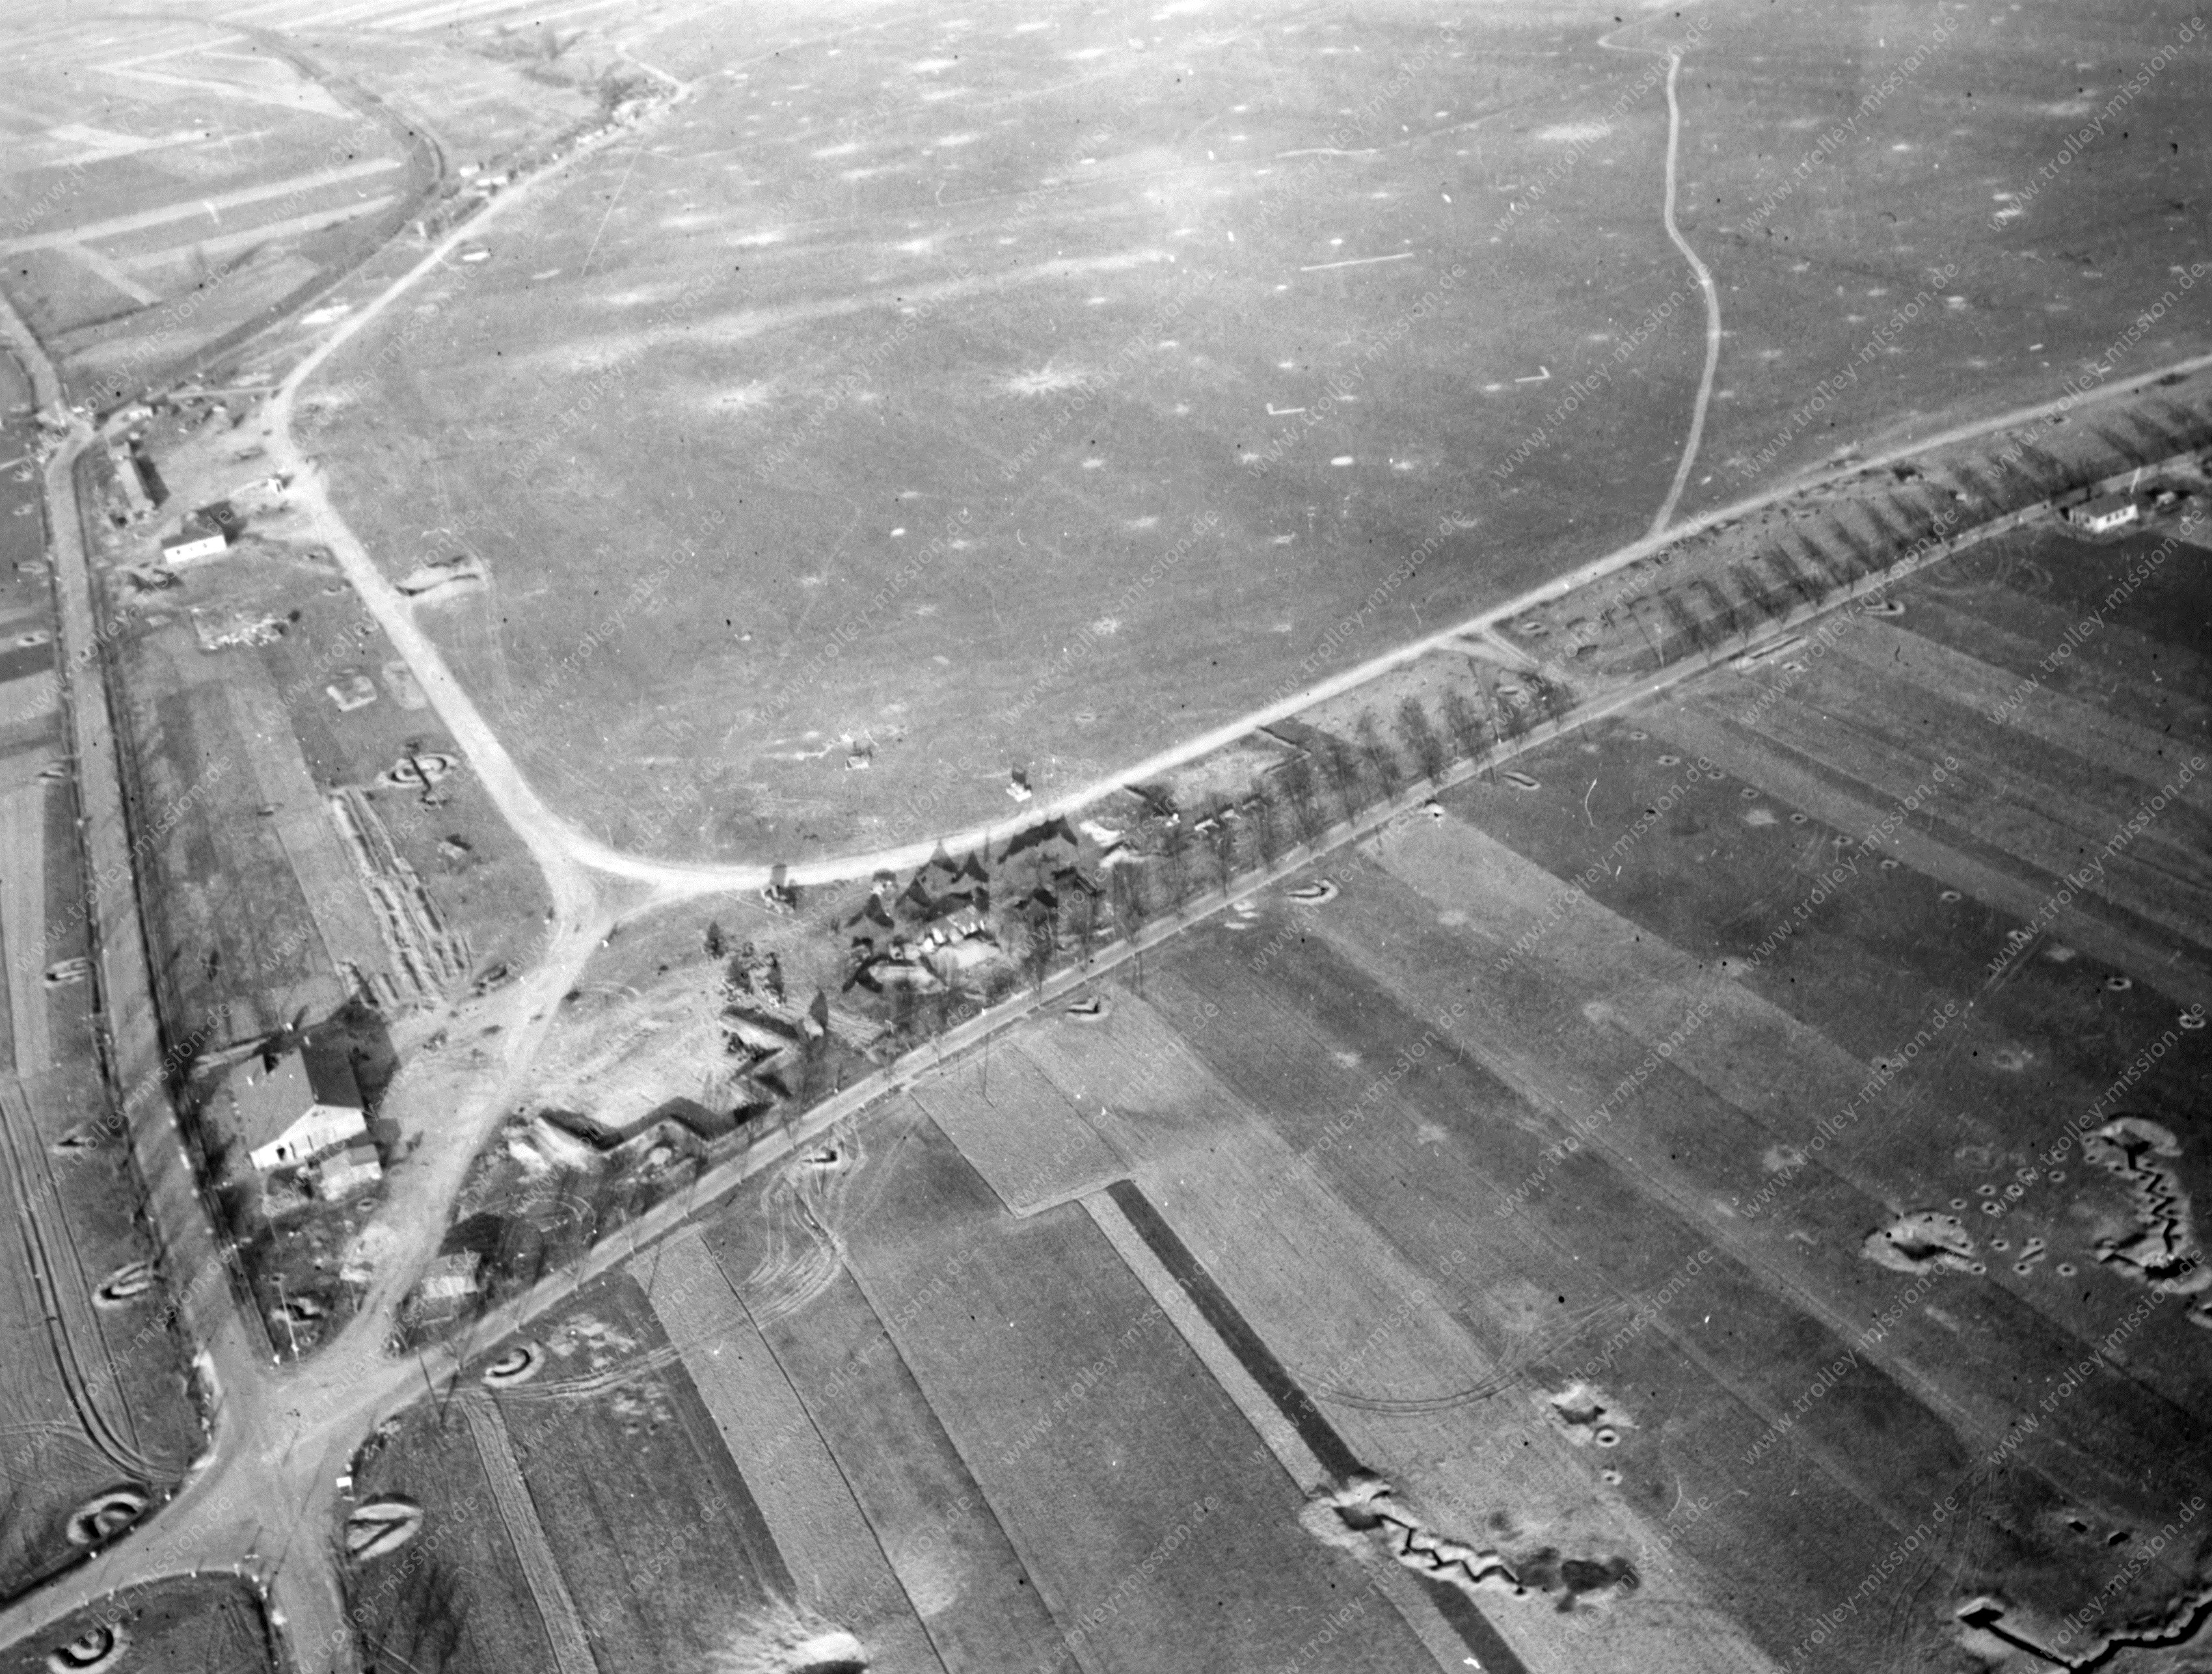 Flugplatz Mendig - Fliegerhorst im Zweiten Weltkrieg